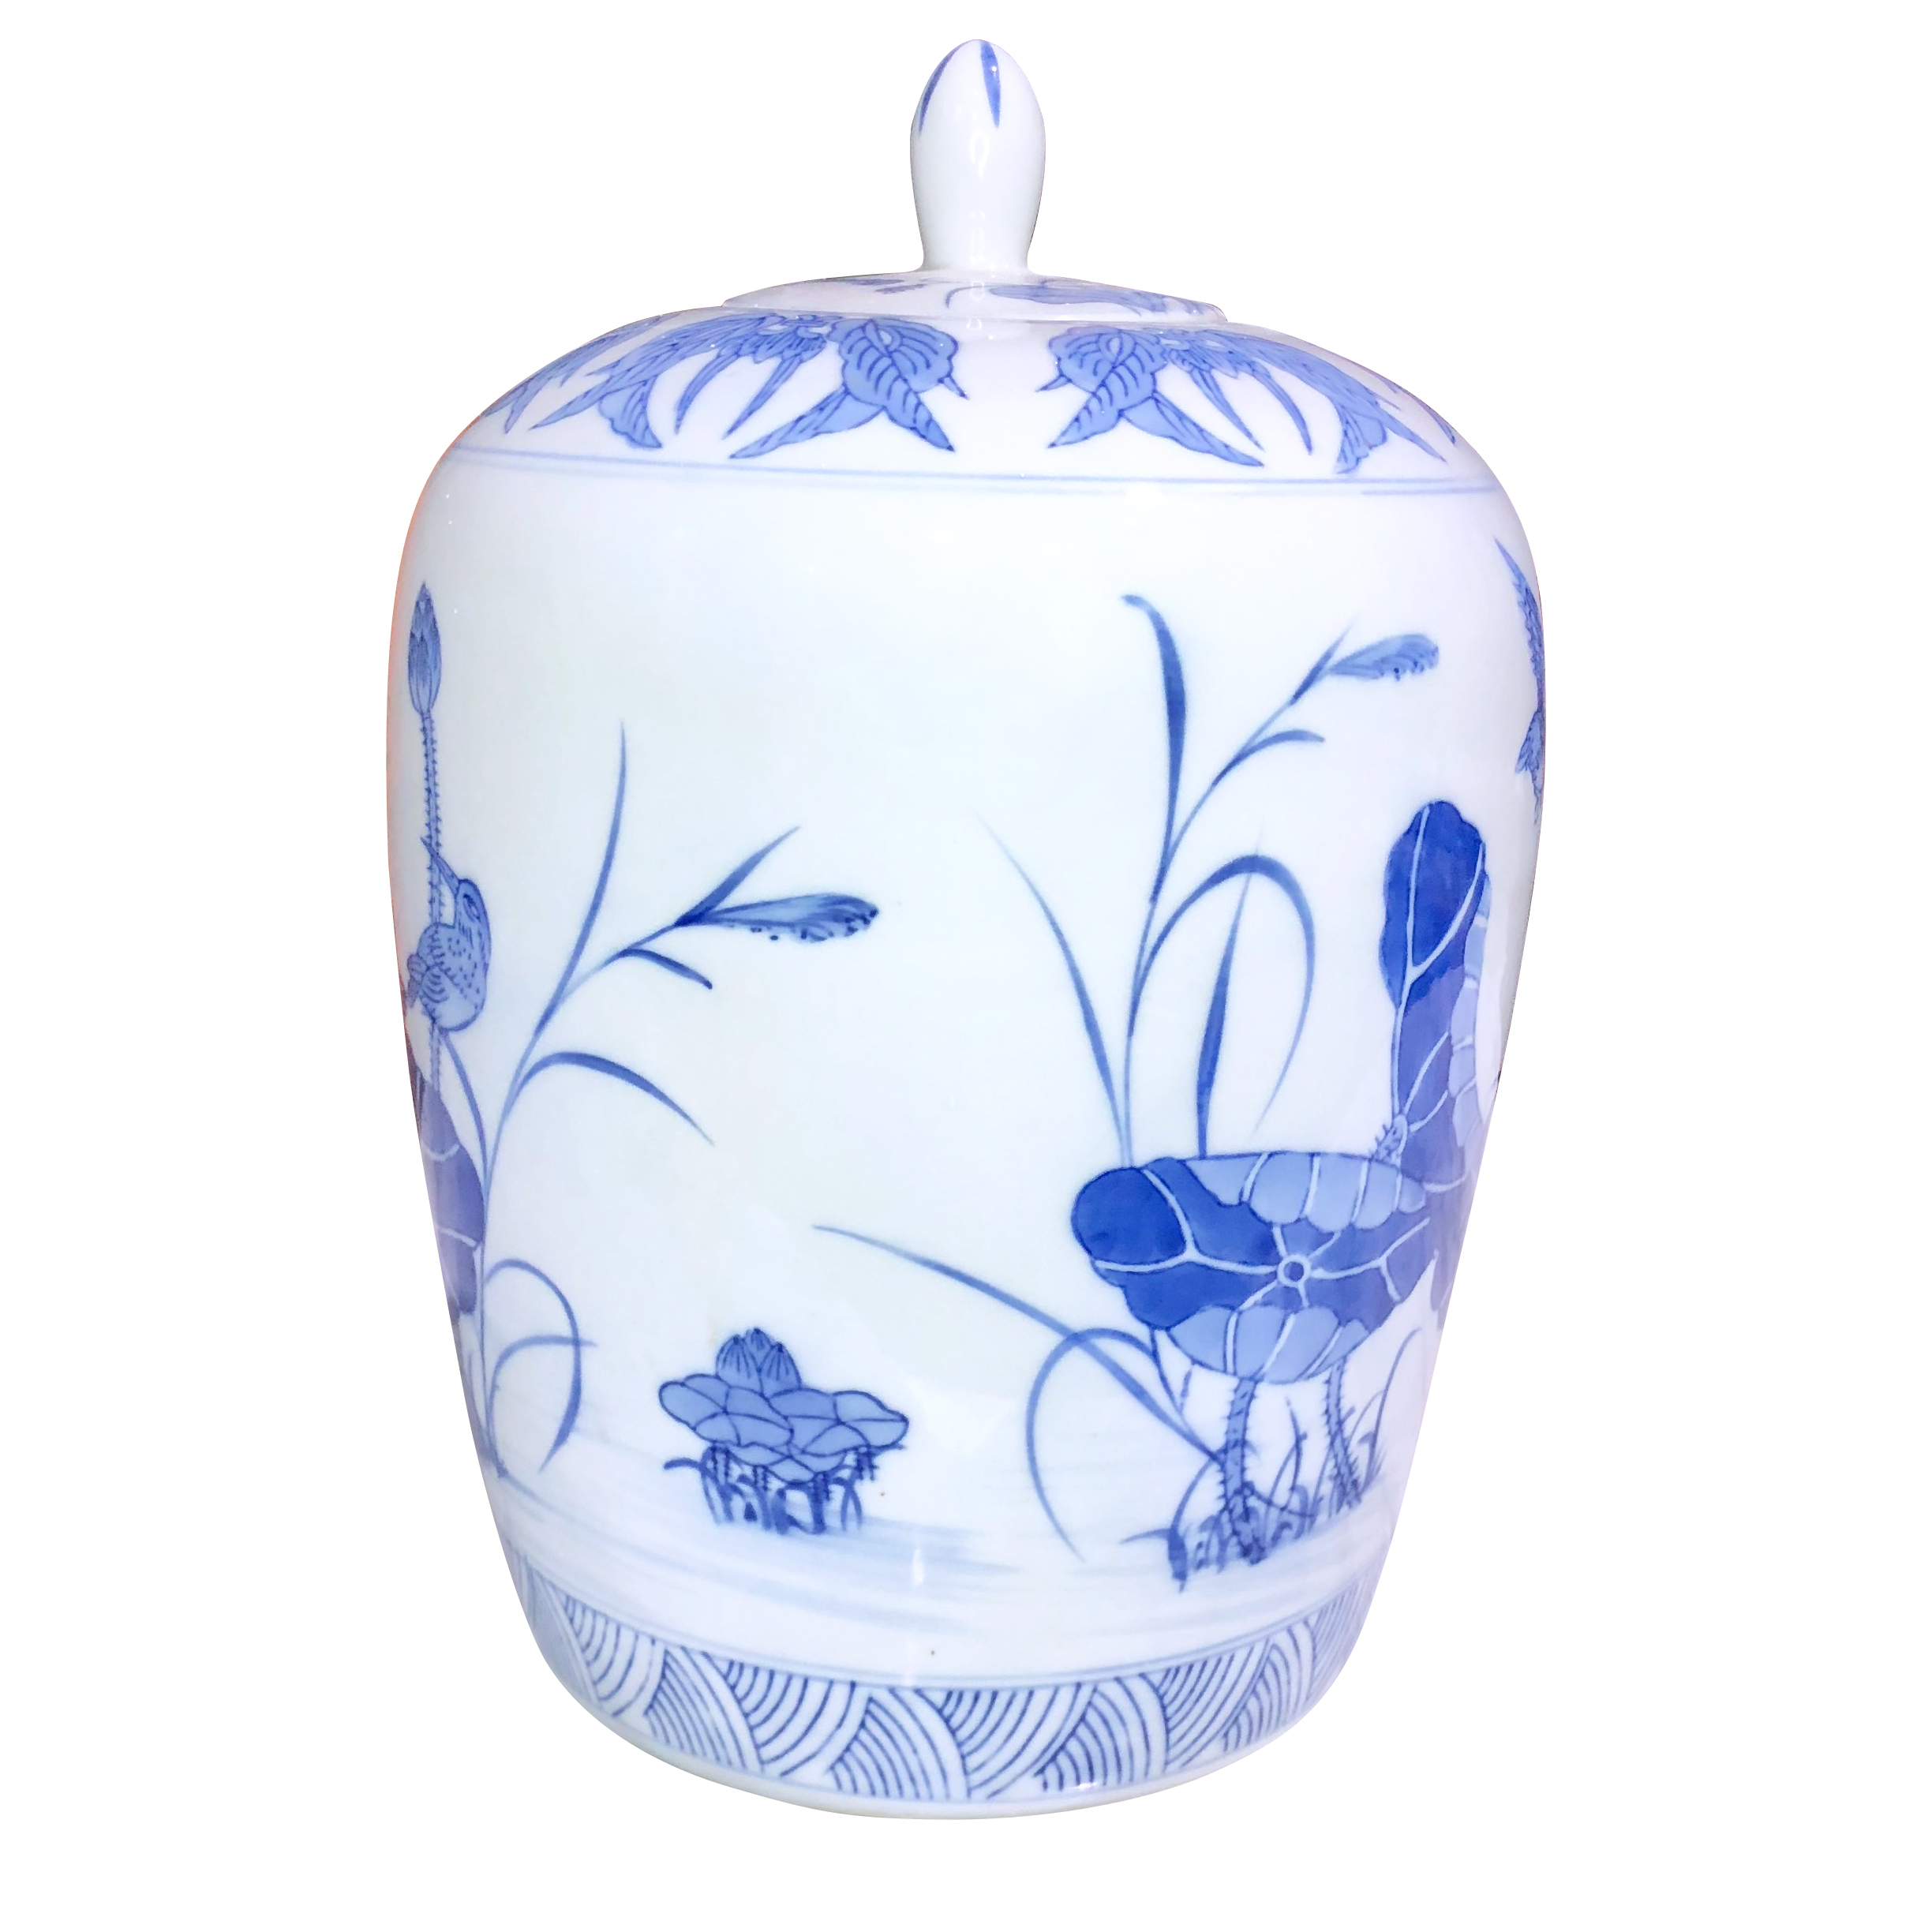 Vintage Chinese Blue & White Porcelain Floral Bird Motif Ginger Jar ...
